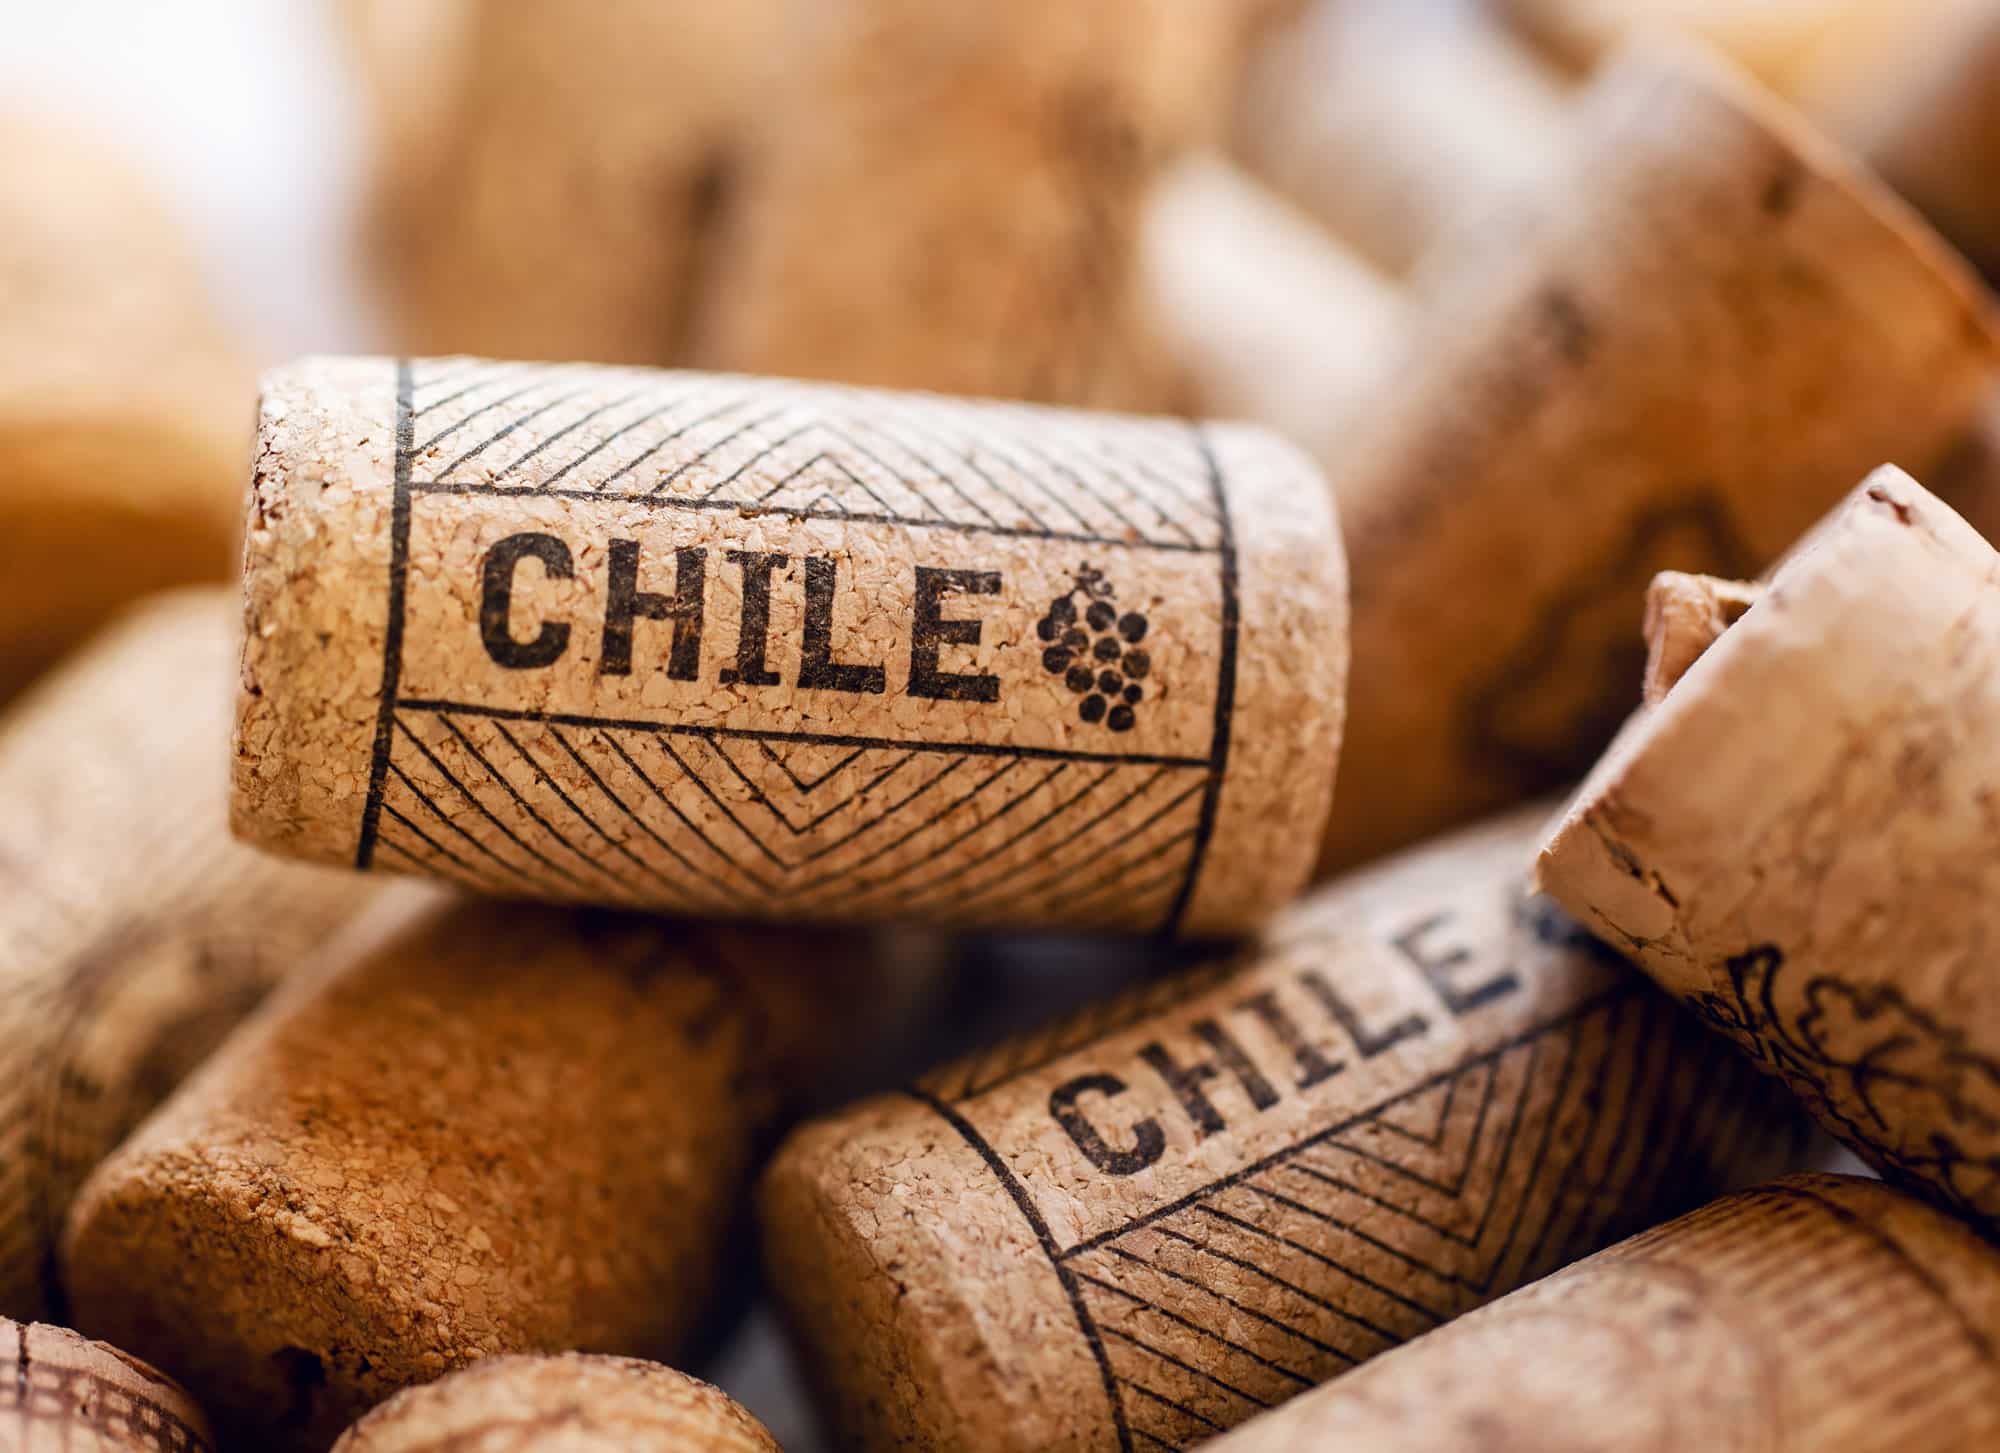 Kurken van Chileense wijnen